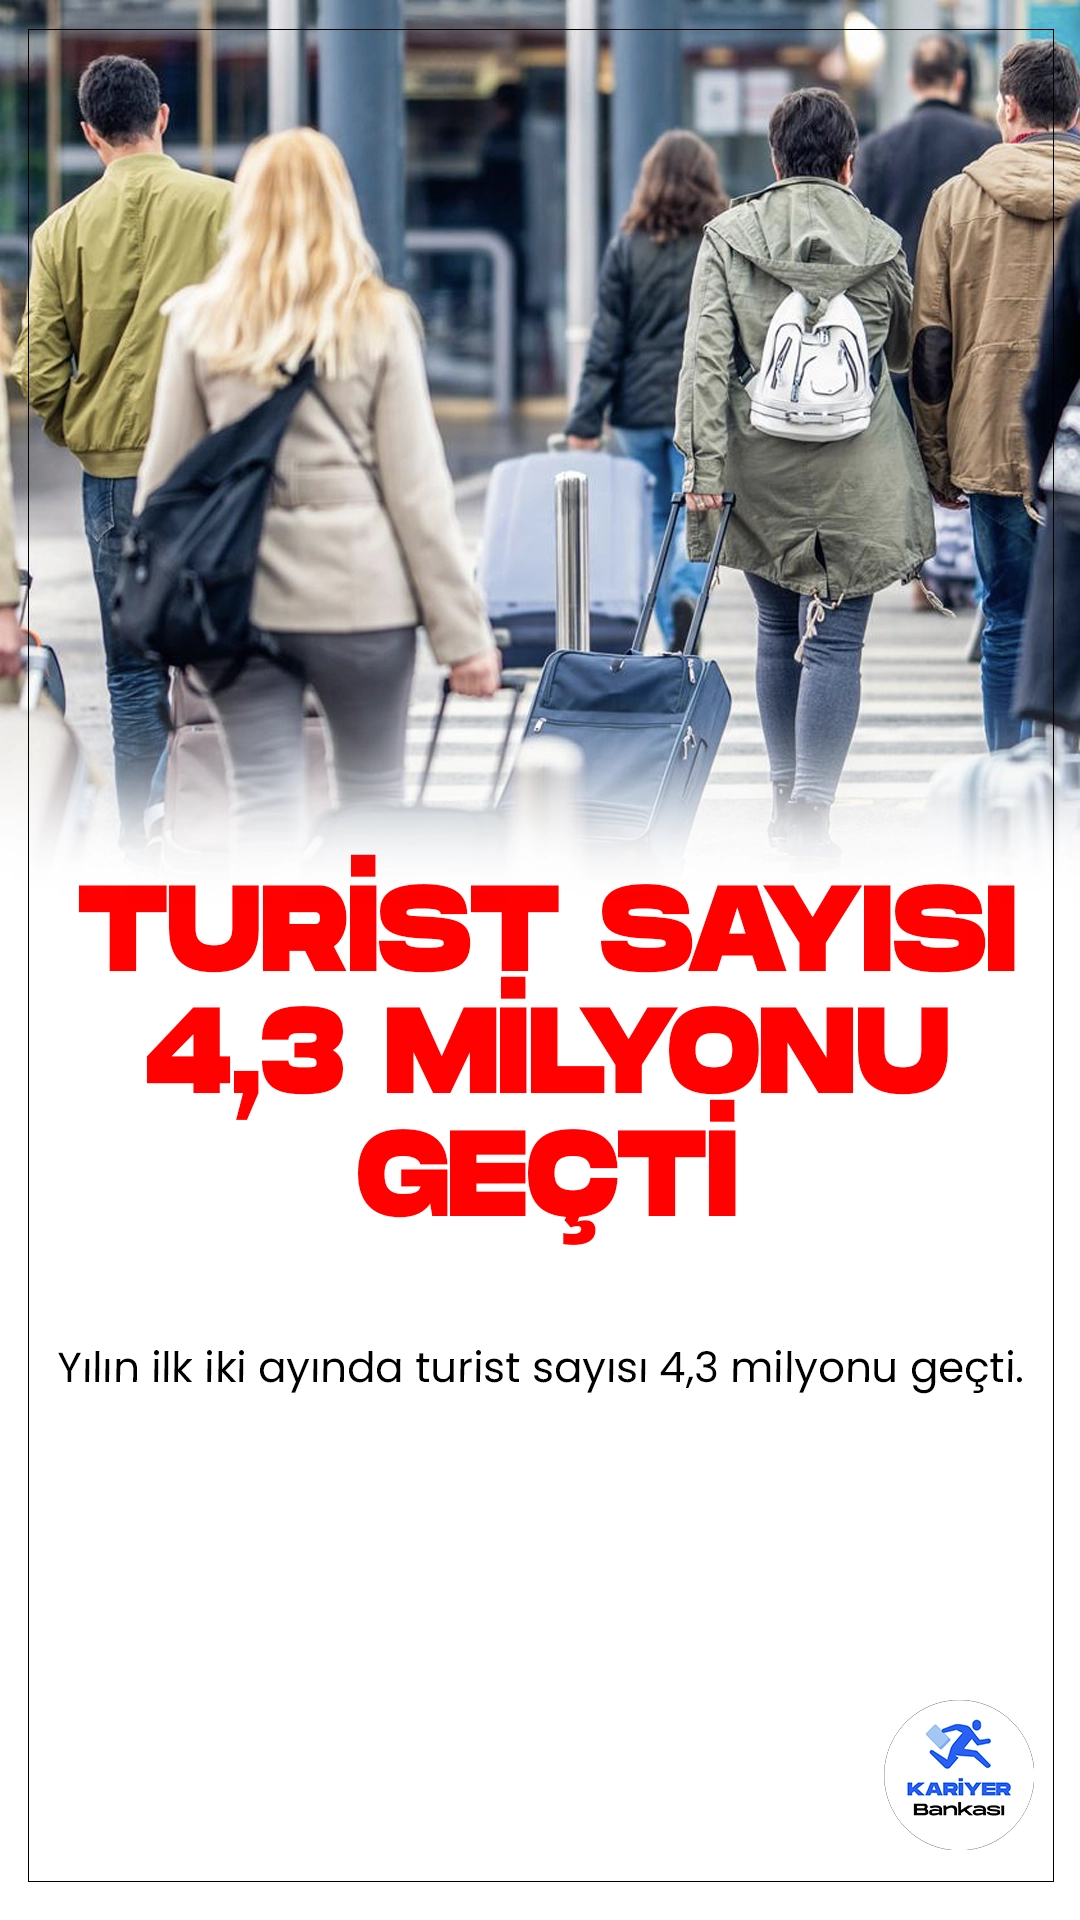 Yılın İlk İki Ayında Turist Sayısı 4,3 Milyonu Aştı: Kültür ve Turizm Sektöründe Büyüme Devam Ediyor.Kültür ve Turizm Bakanlığı, ocak ve şubat aylarında 4 milyon 341 bin 606 turistin Türkiye'ye geldiğini açıkladı.